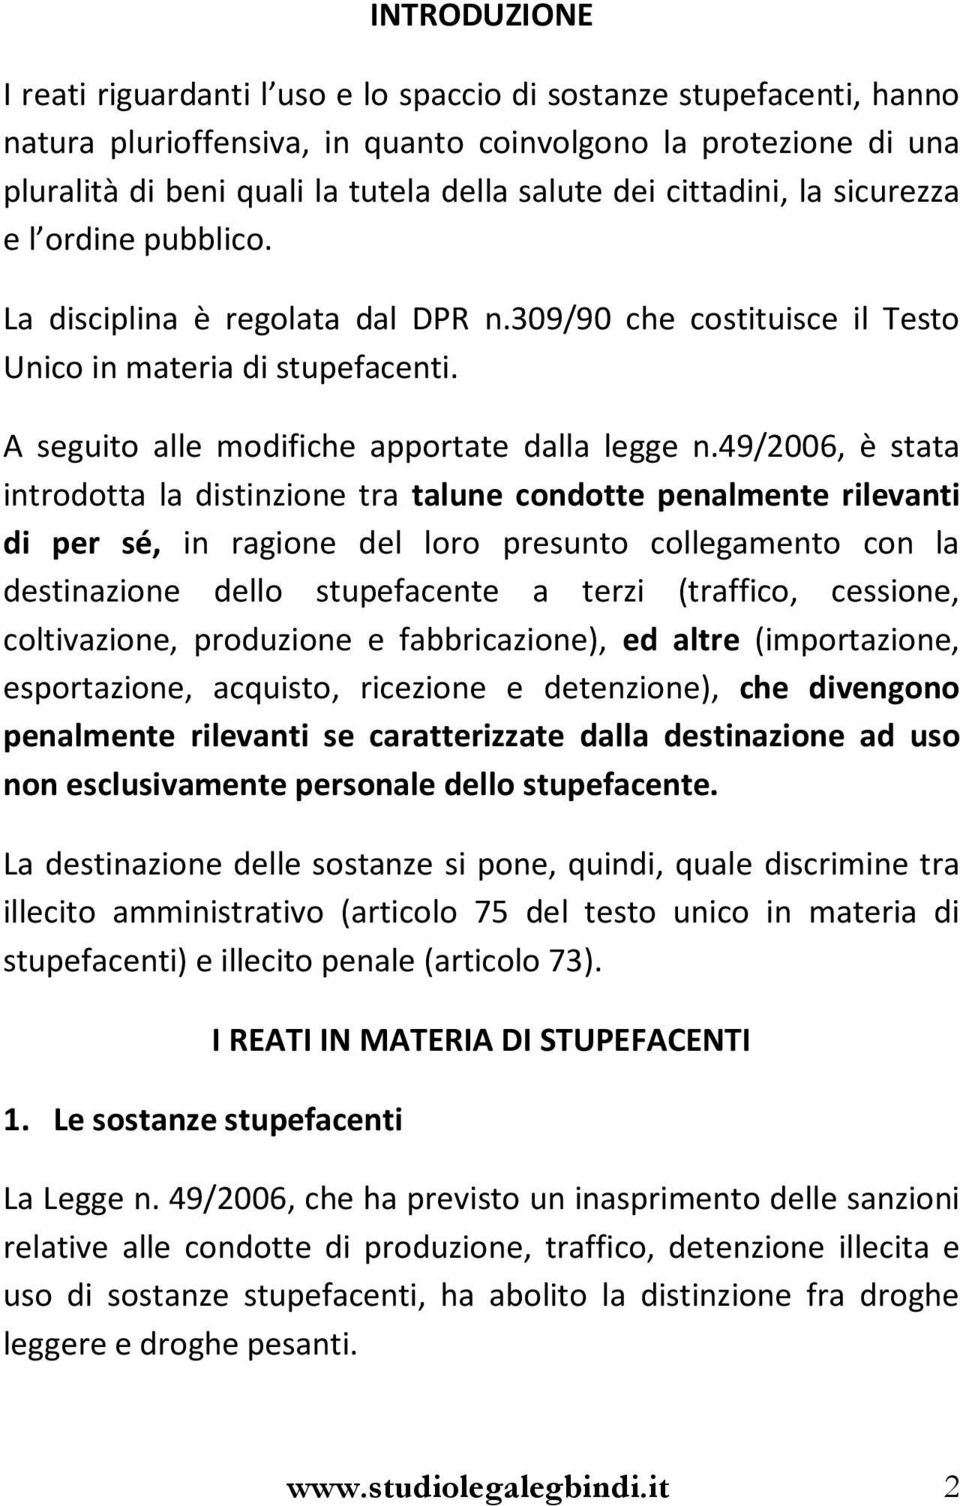 Giorgio Bindi Stupefacenti Guida Pratica Ai Reati Penali E Agli Illeciti Amministrativi In Materia Di Stupefacenti Pdf Free Download